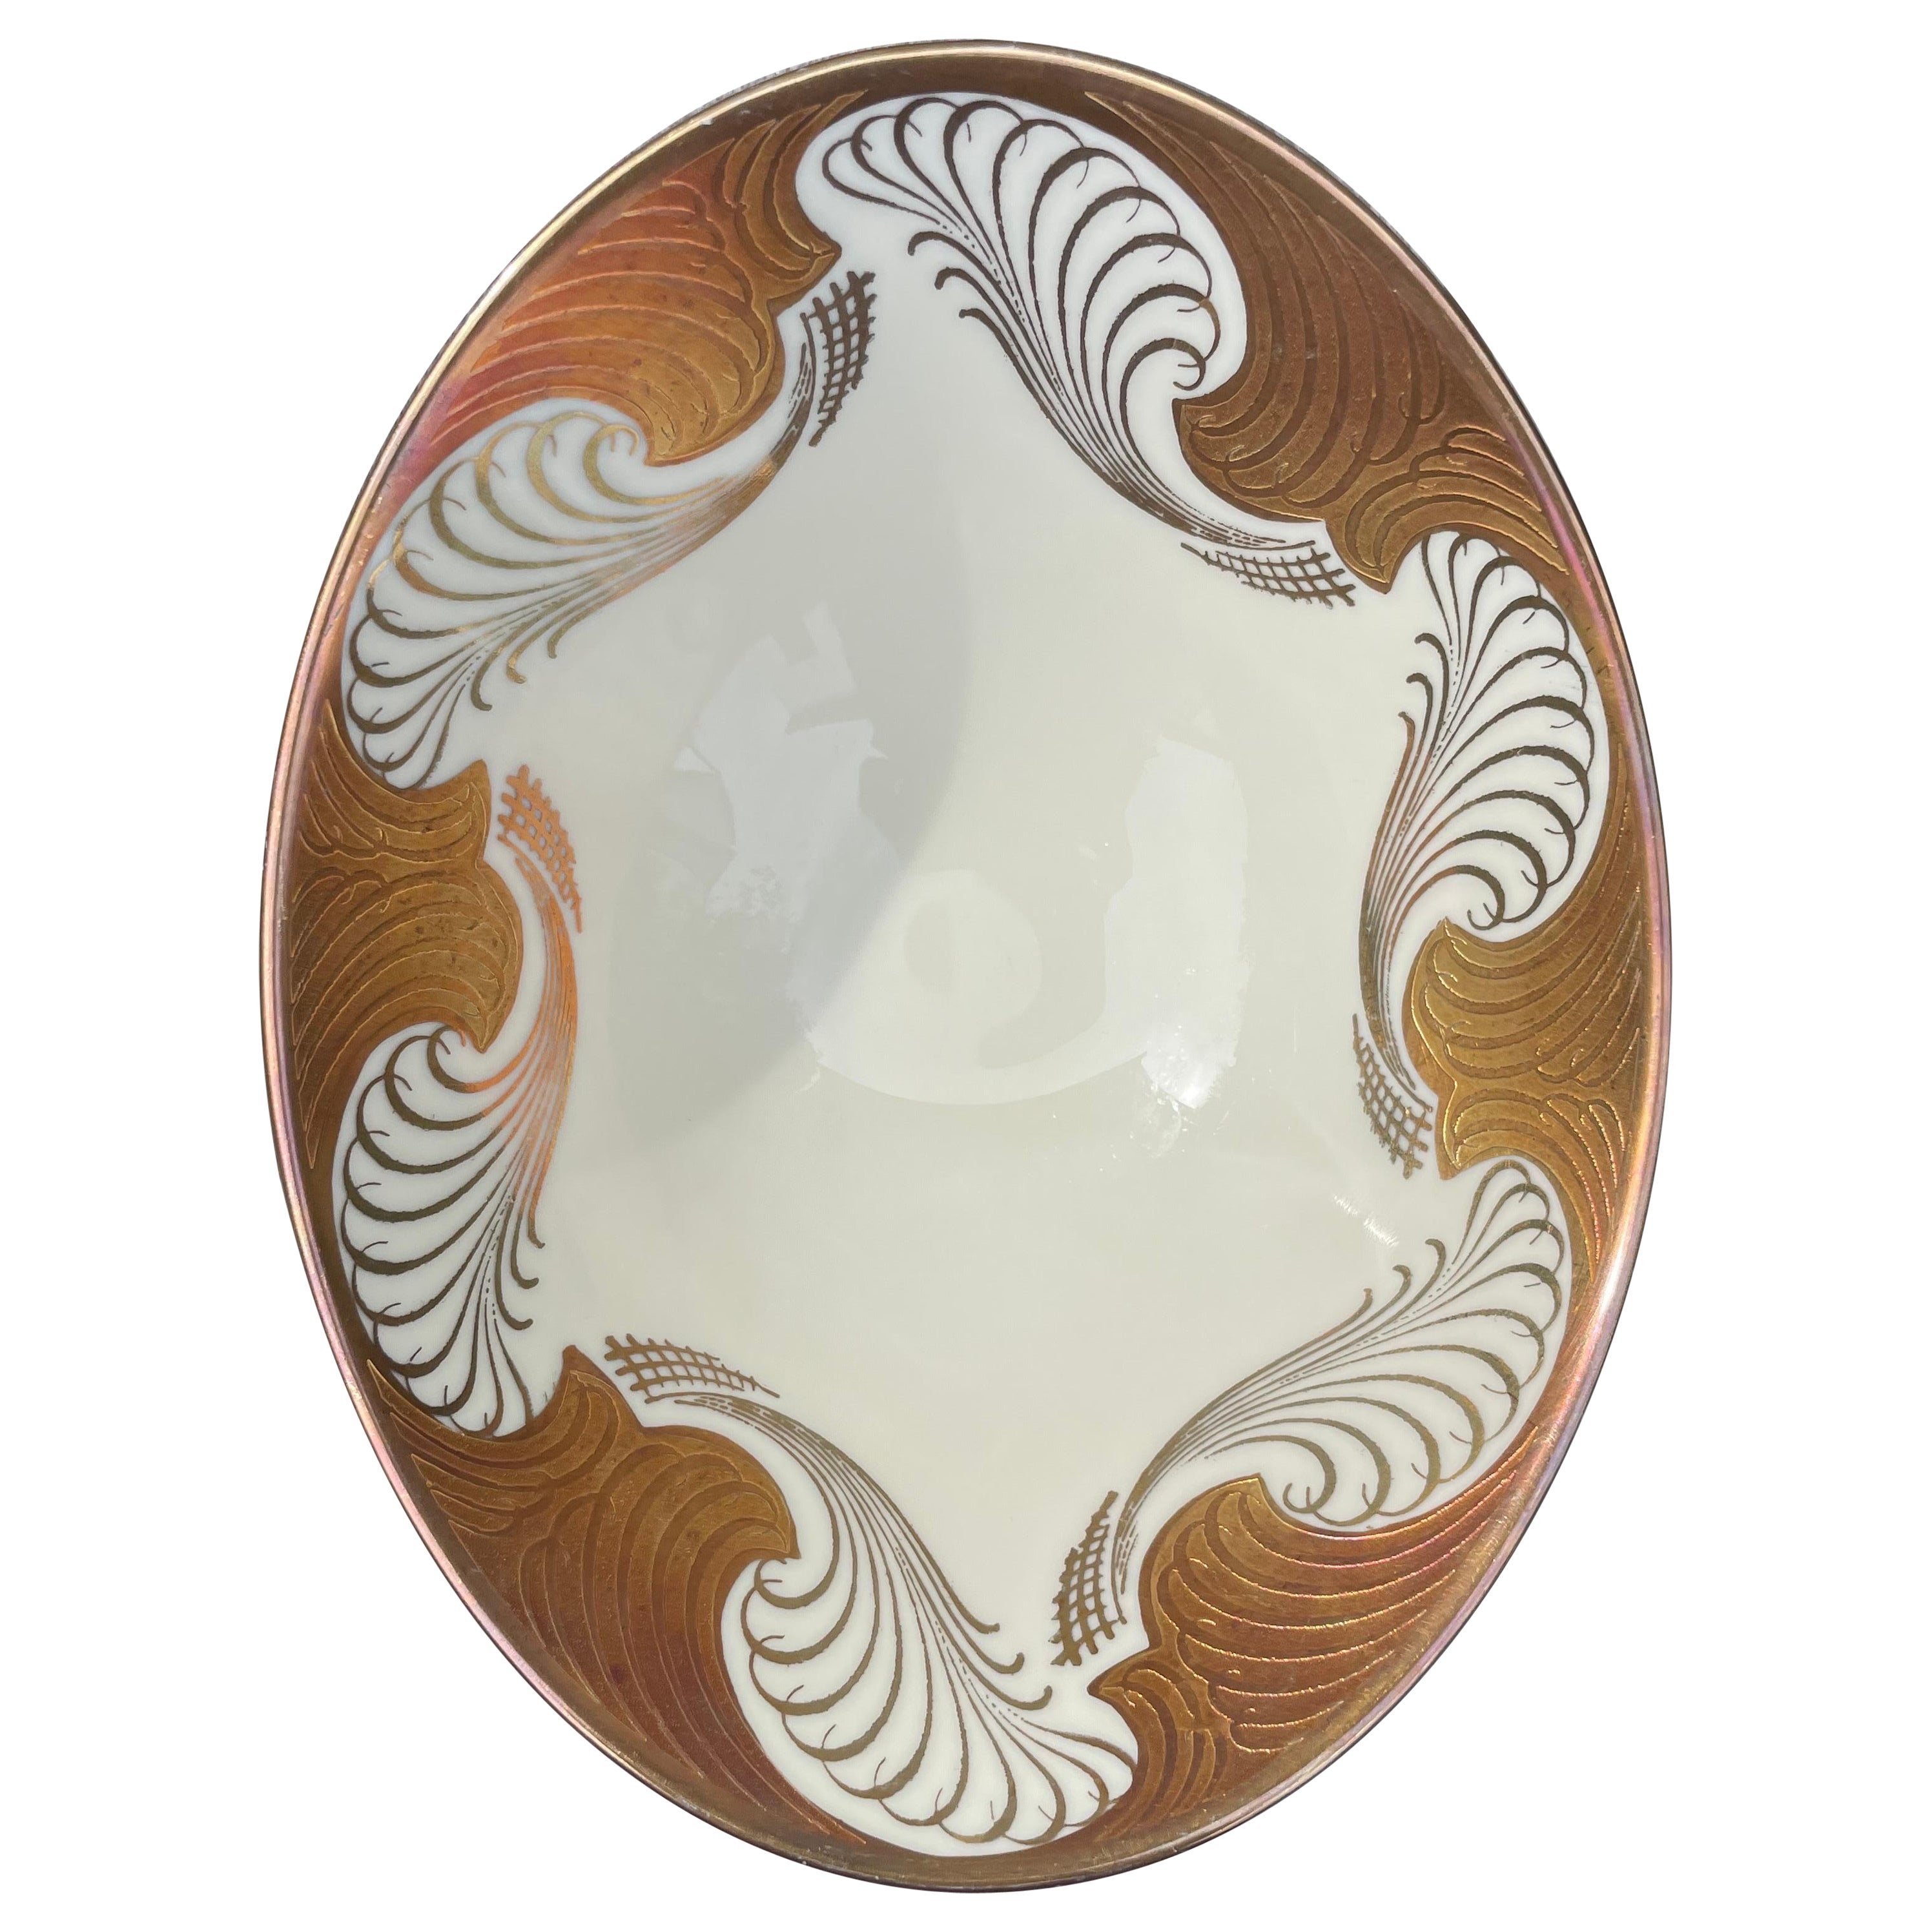 Alka Kunst Bavaria Oval Ivory White Golden Decorative Porcelain Bowl, 1960s For Sale